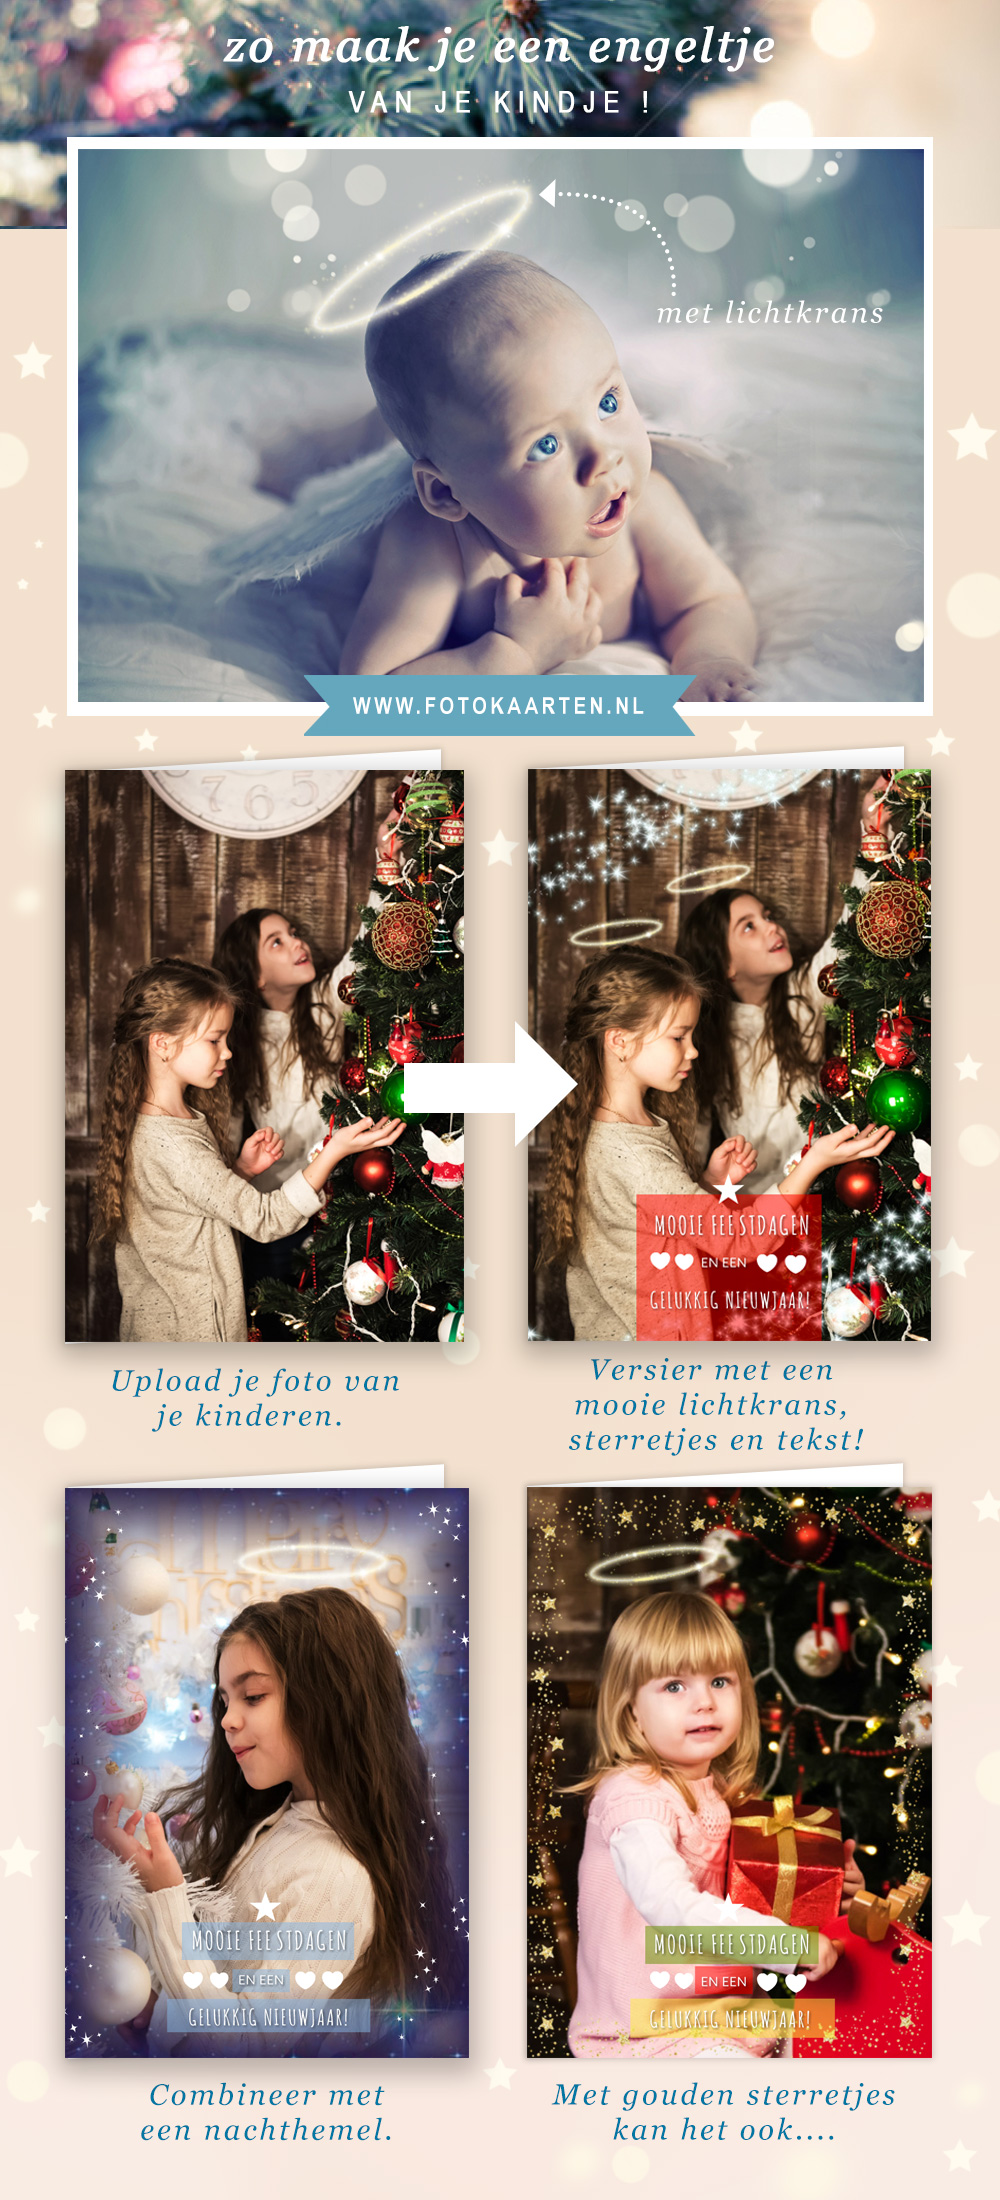 Aan de overkant compact Betasten 7 leuke ideeën bij het maken van je foto kerstkaarten – Fotokaarten